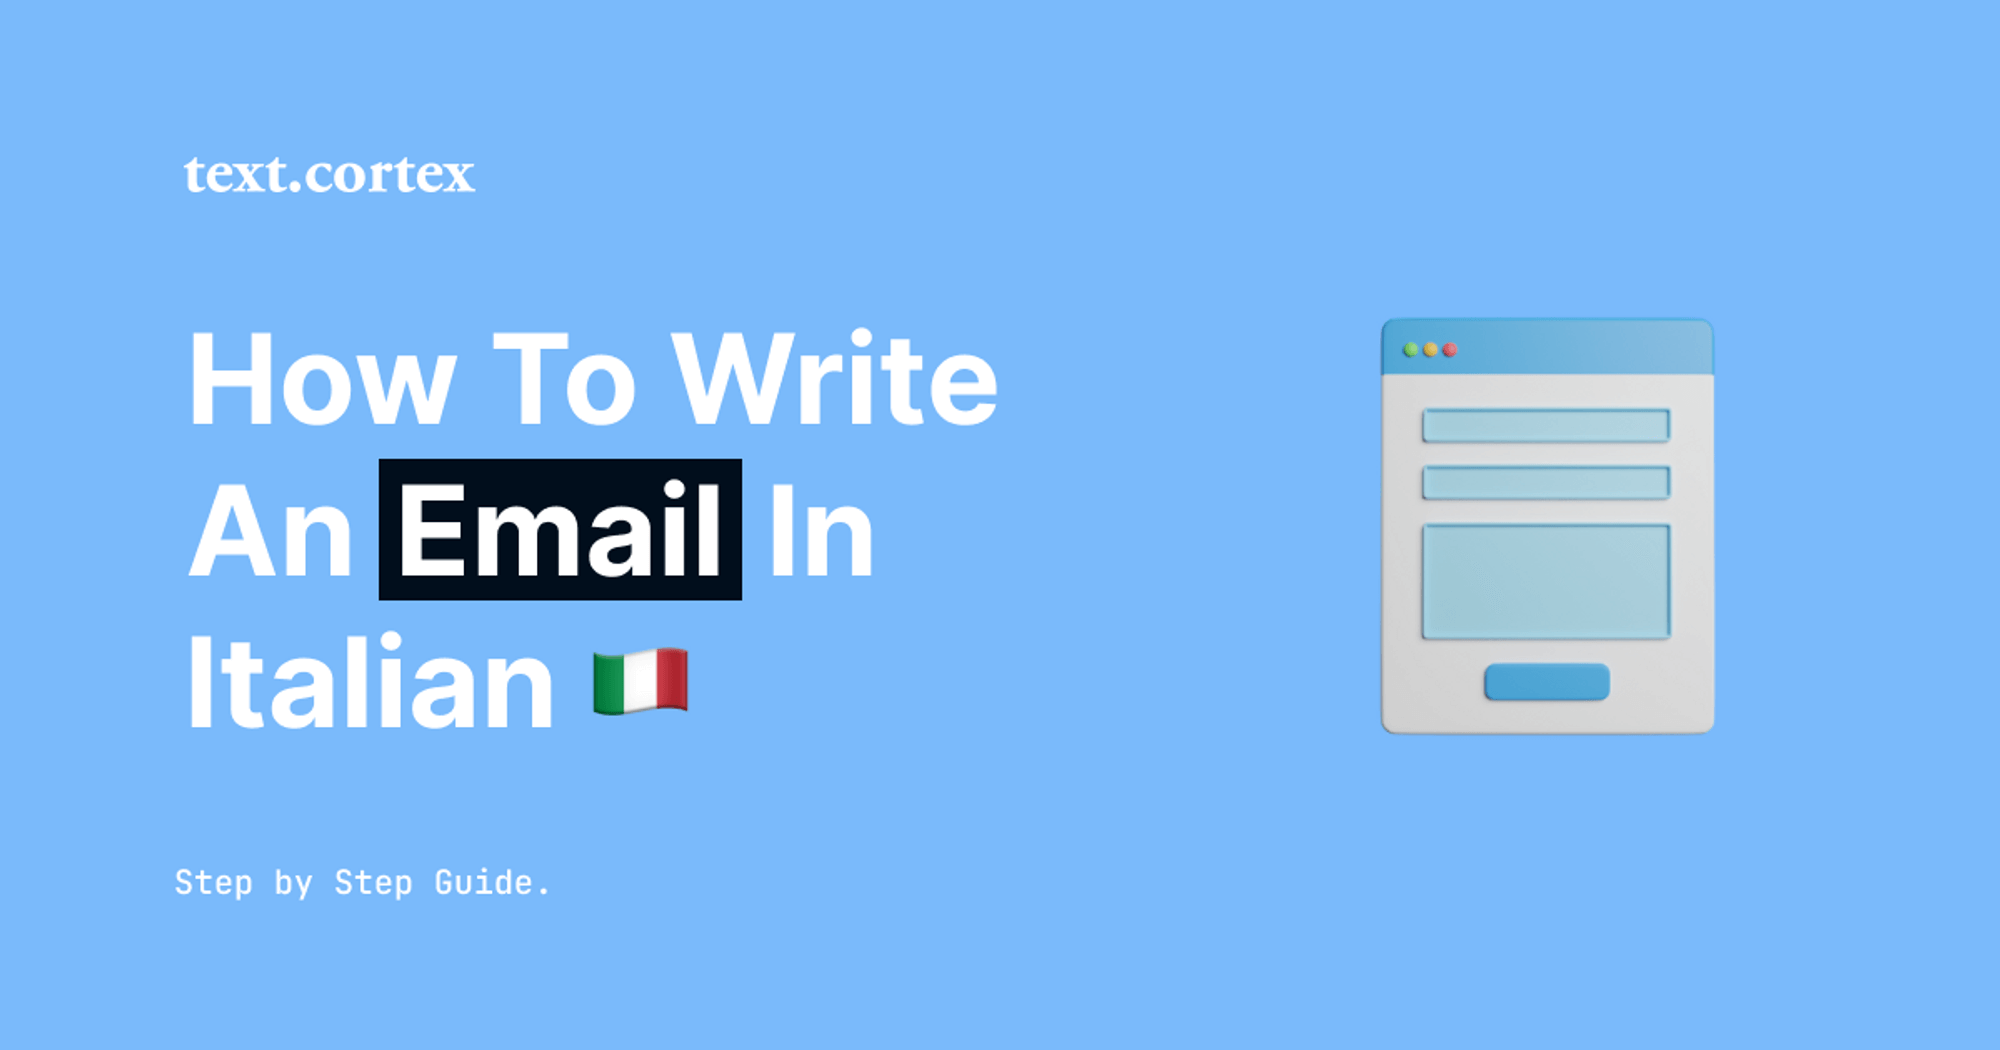 Cómo escribir un correo electrónico en italiano - Guía paso a paso